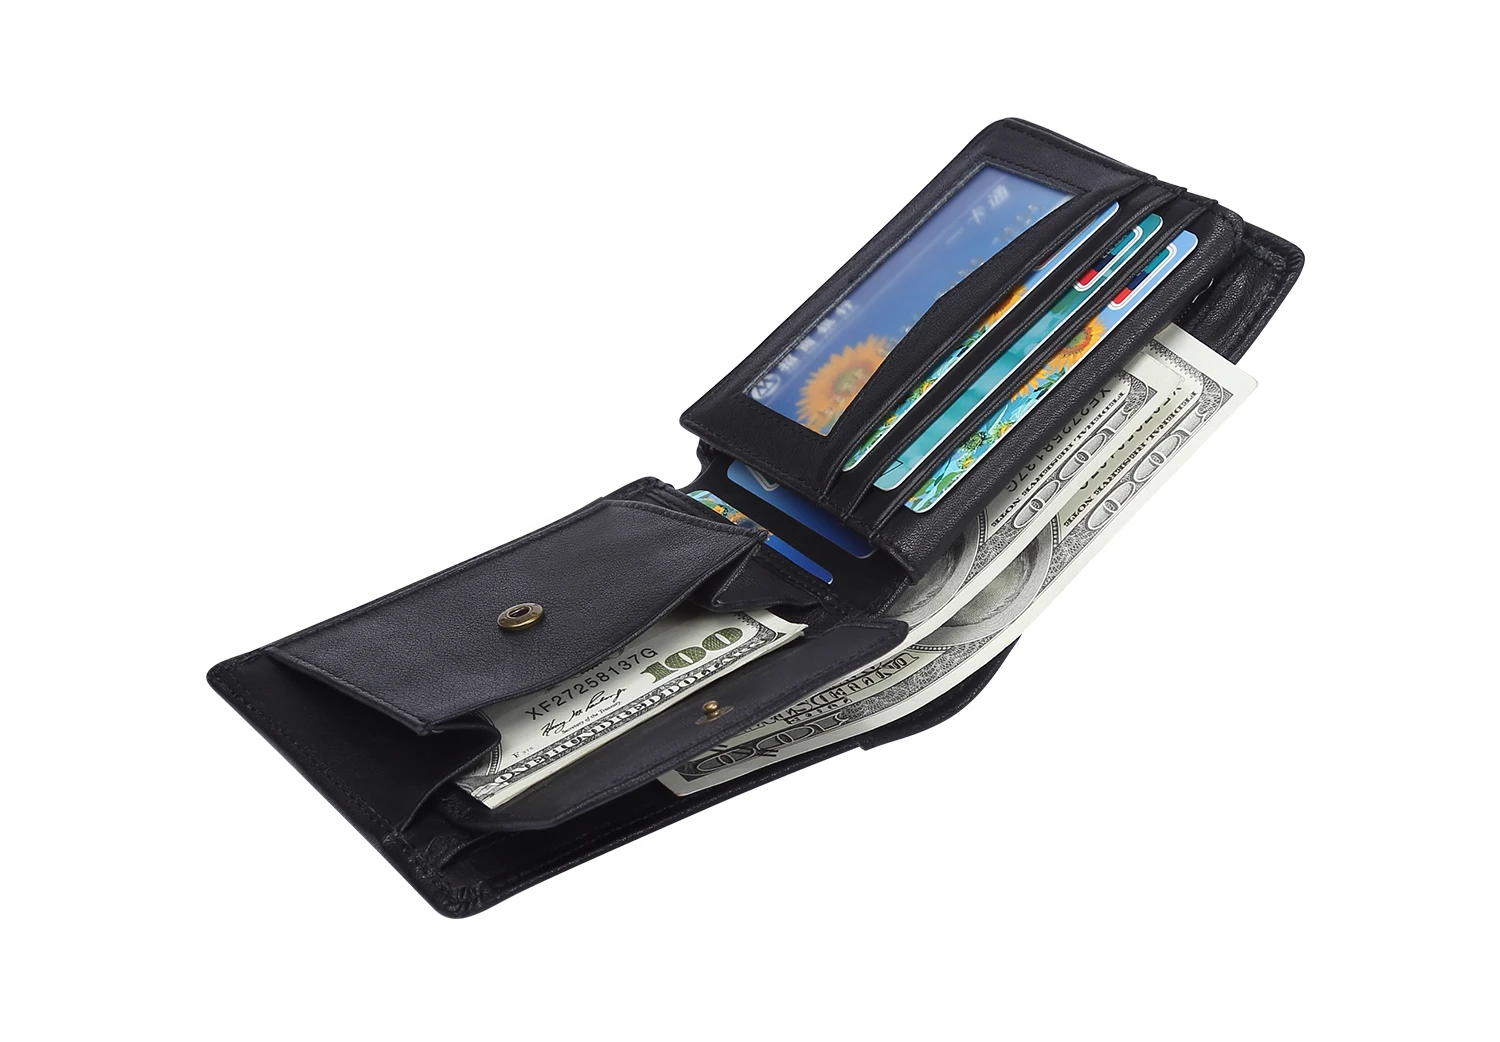 Распродажа мужской RFID блокирующий кошелек из натуральной кожи небольшой, с разворотом минималистичный кошелек винтажный кошелек для карт мужской Carteria Masculina